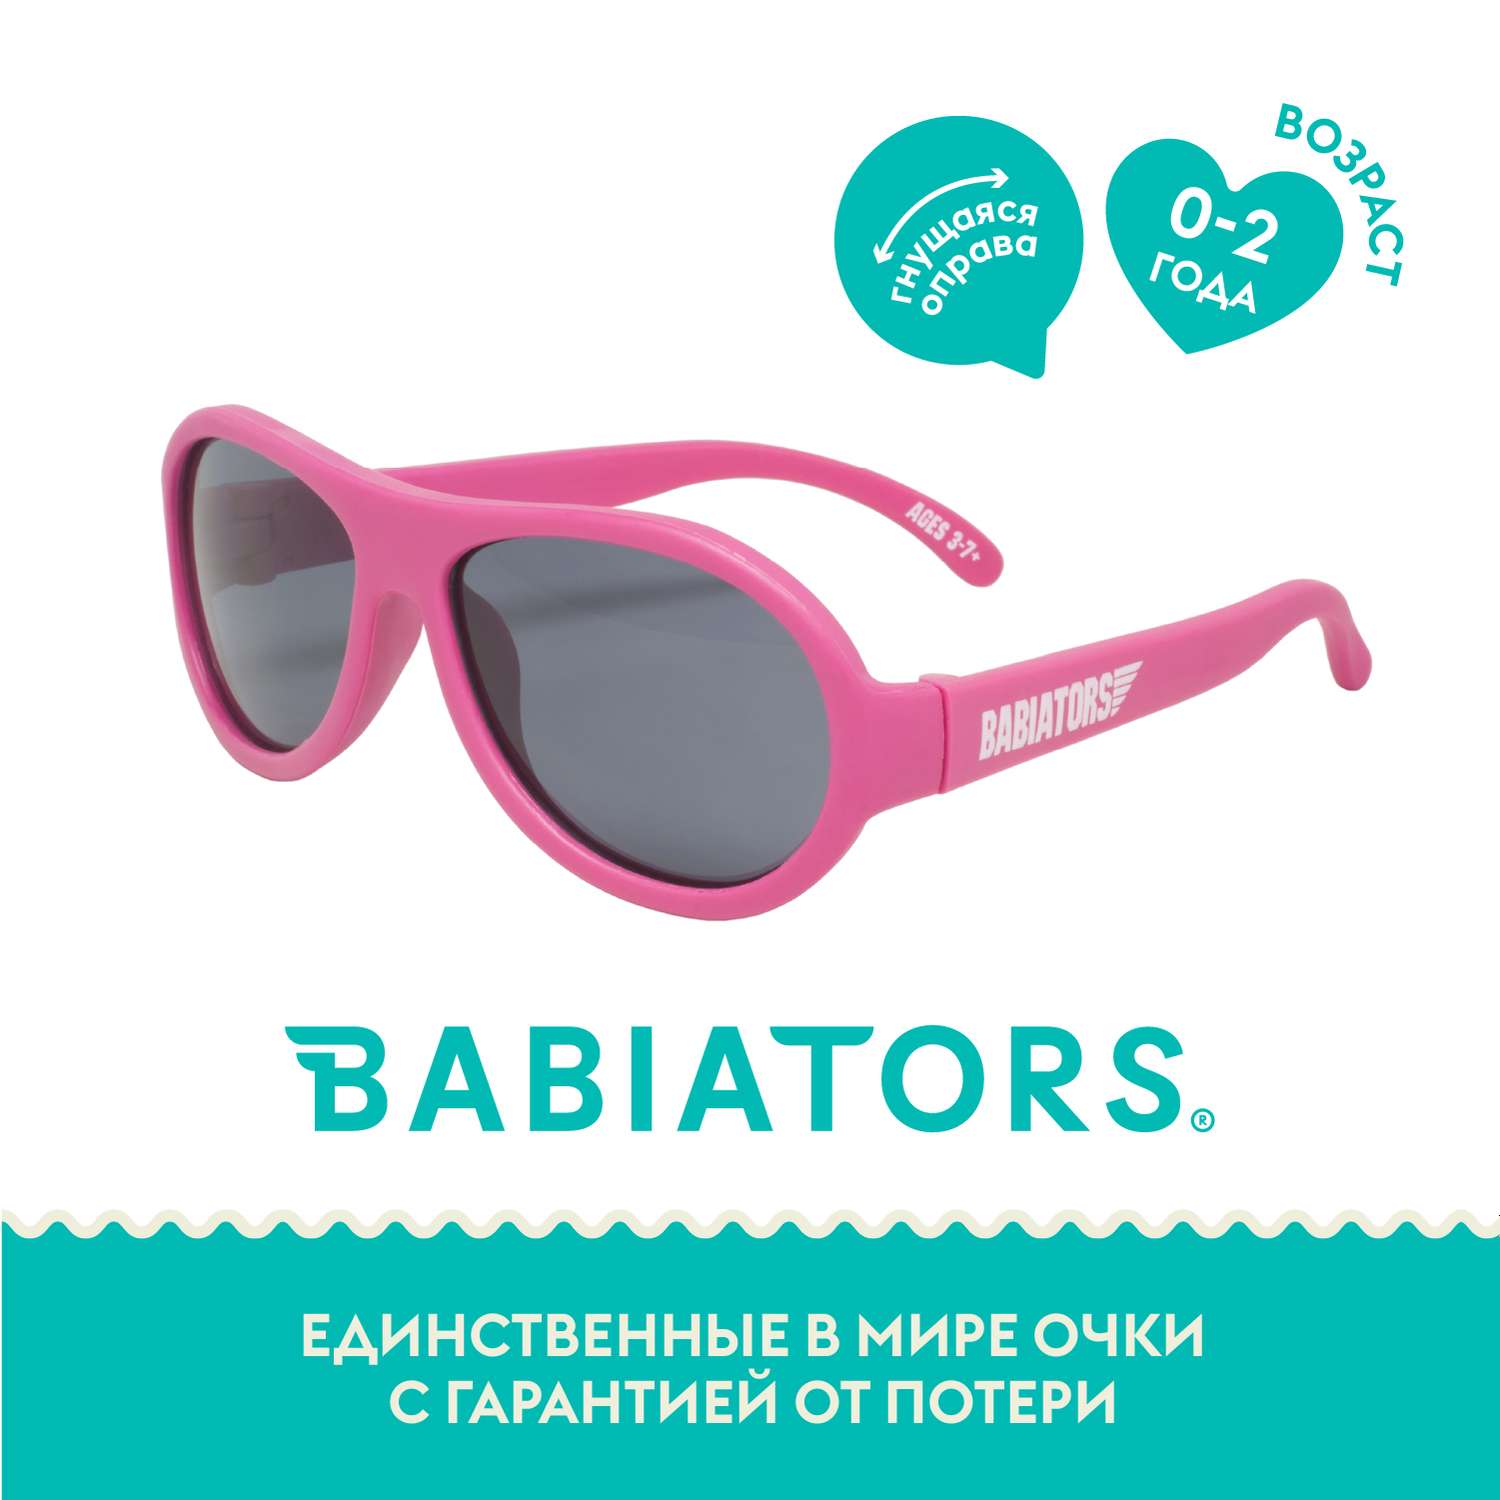 Солнцезащитные очки Babiators Aviator Попсовый розовый 0-2 BAB-043 - фото 2